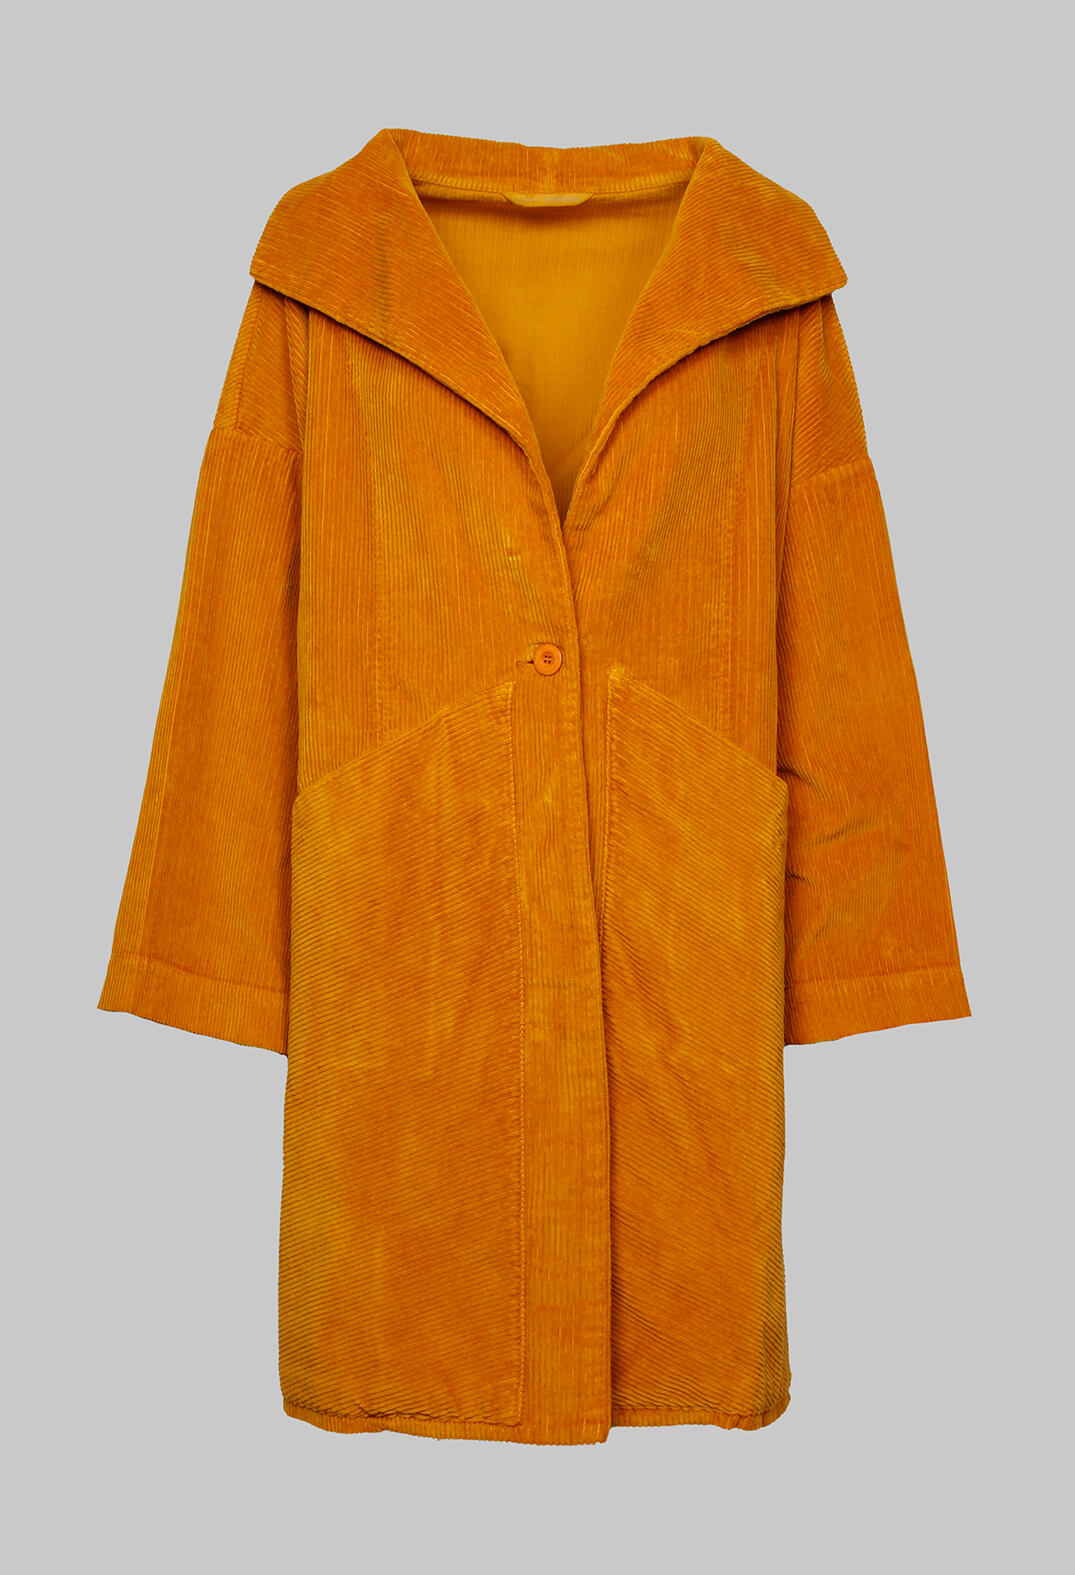 Maima Jacket in Saffron